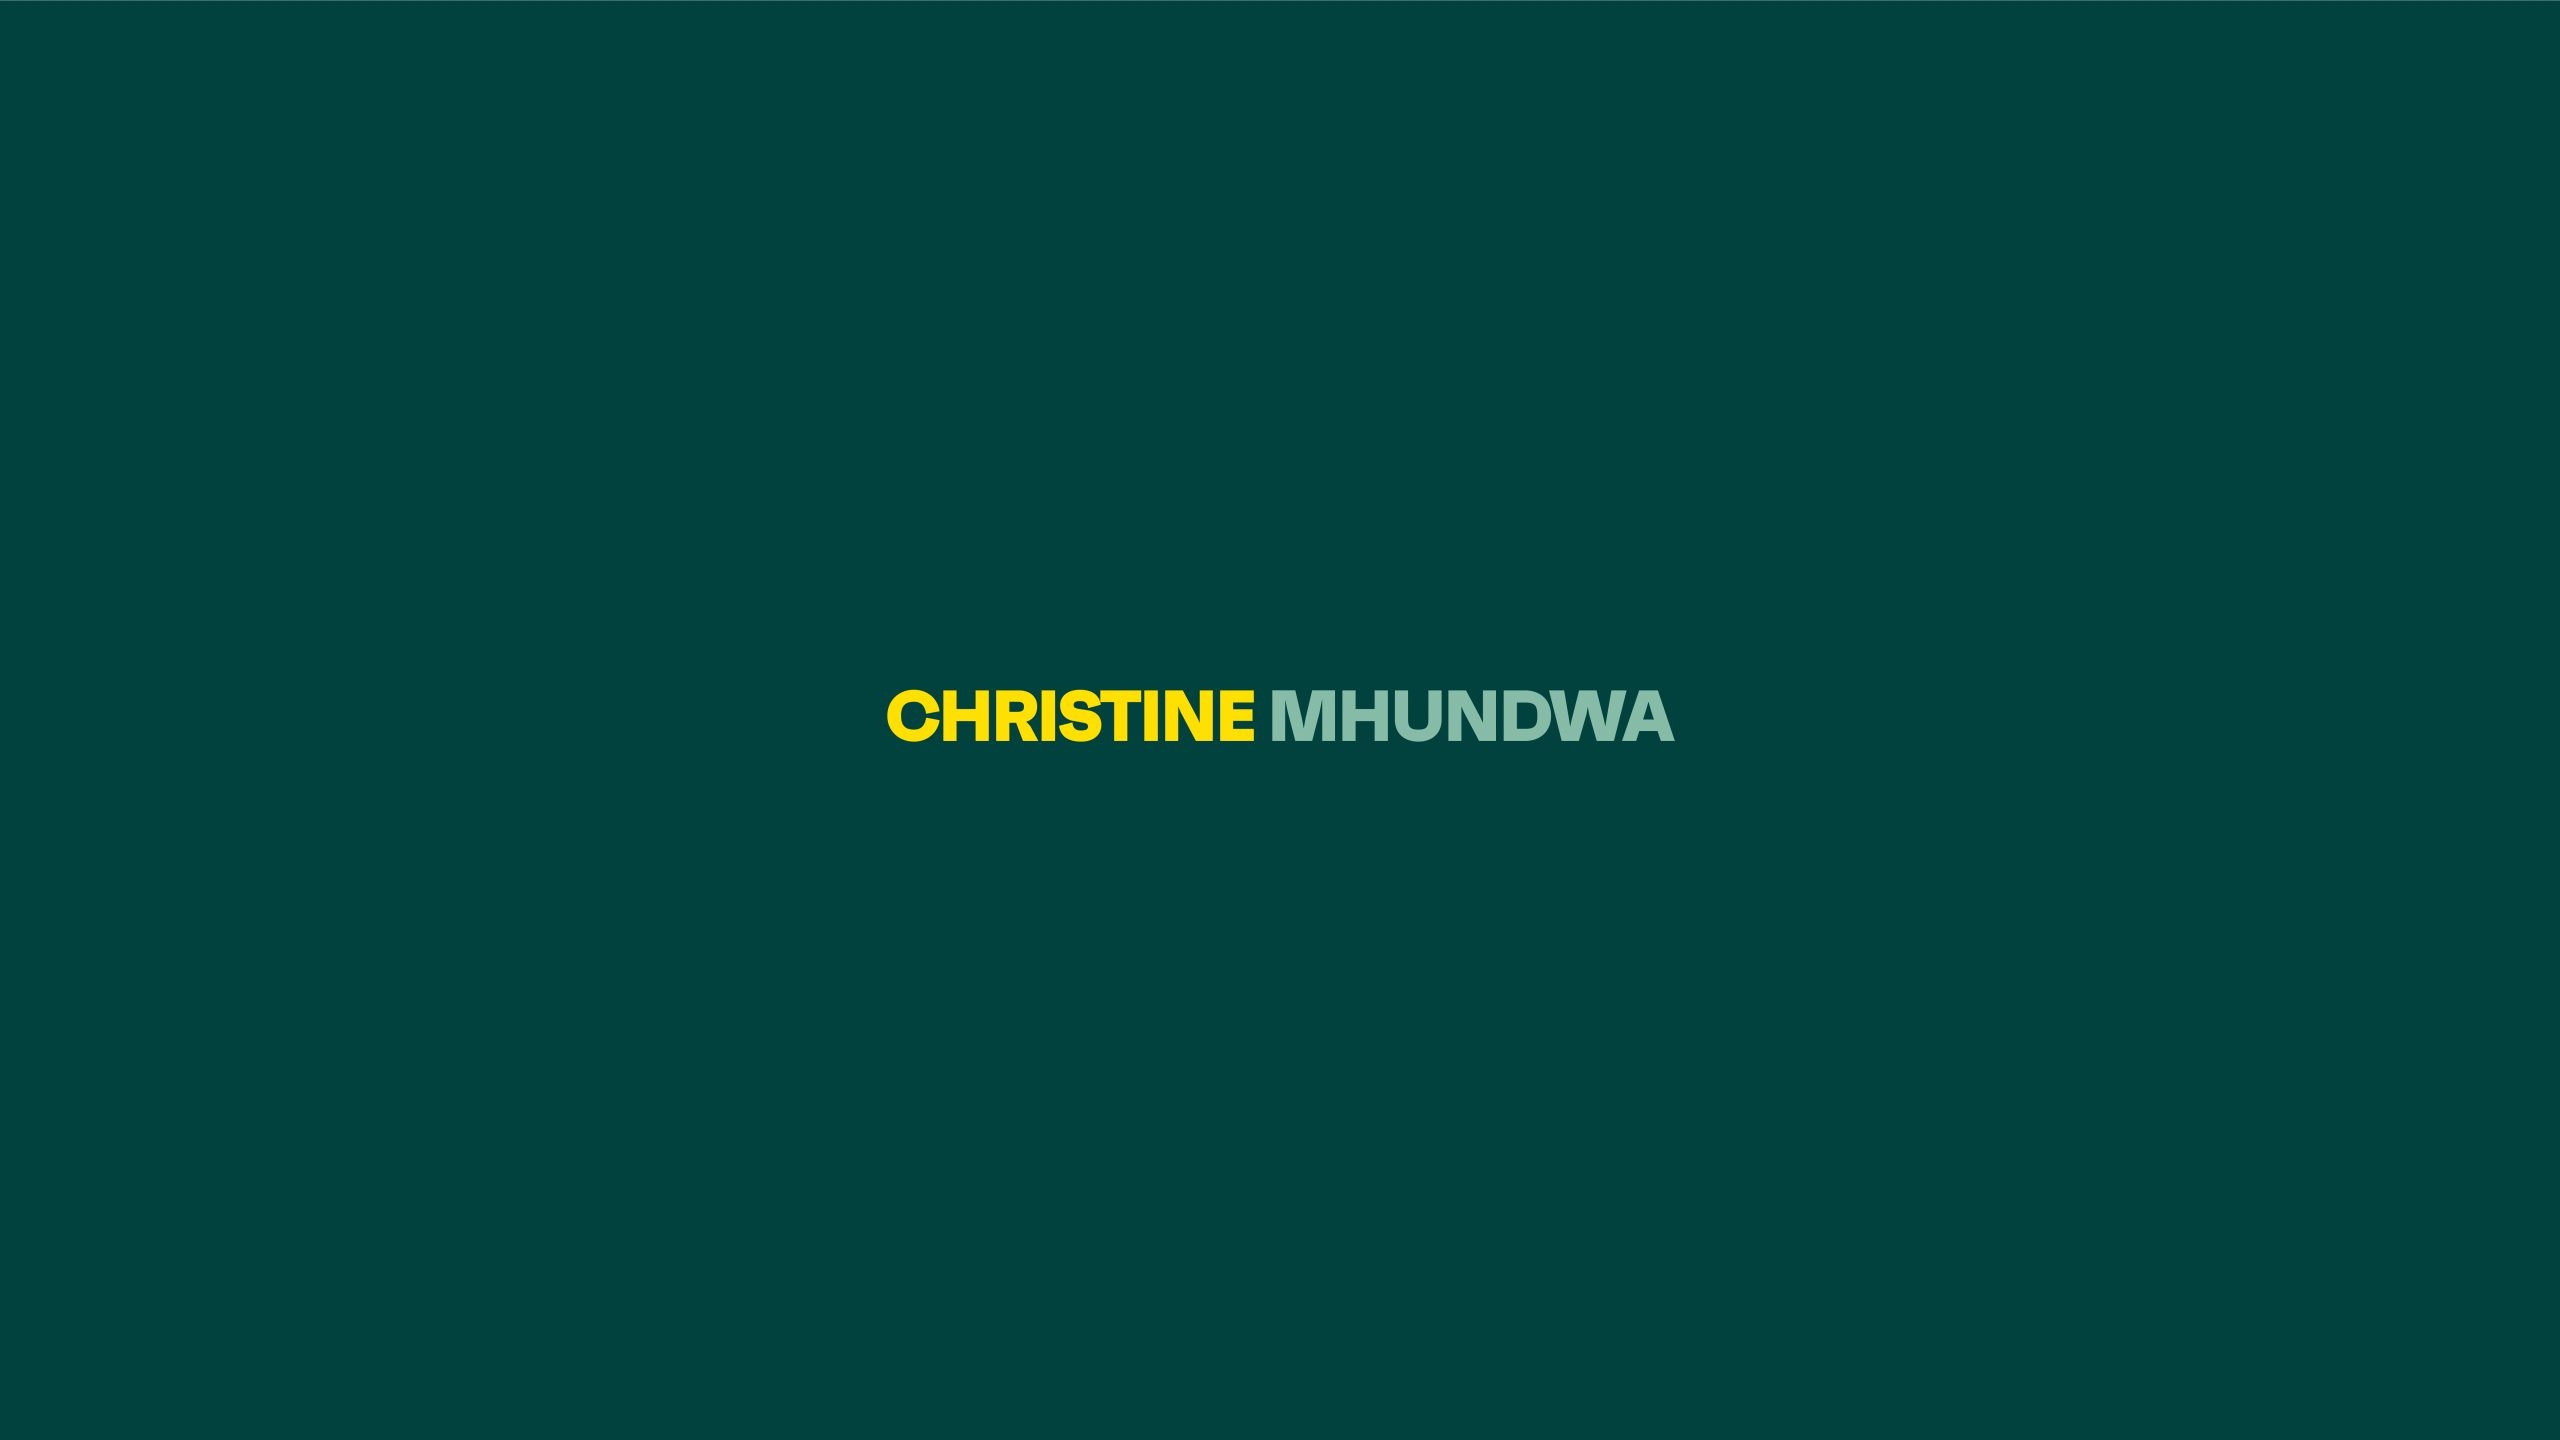 Christine Mhundwa